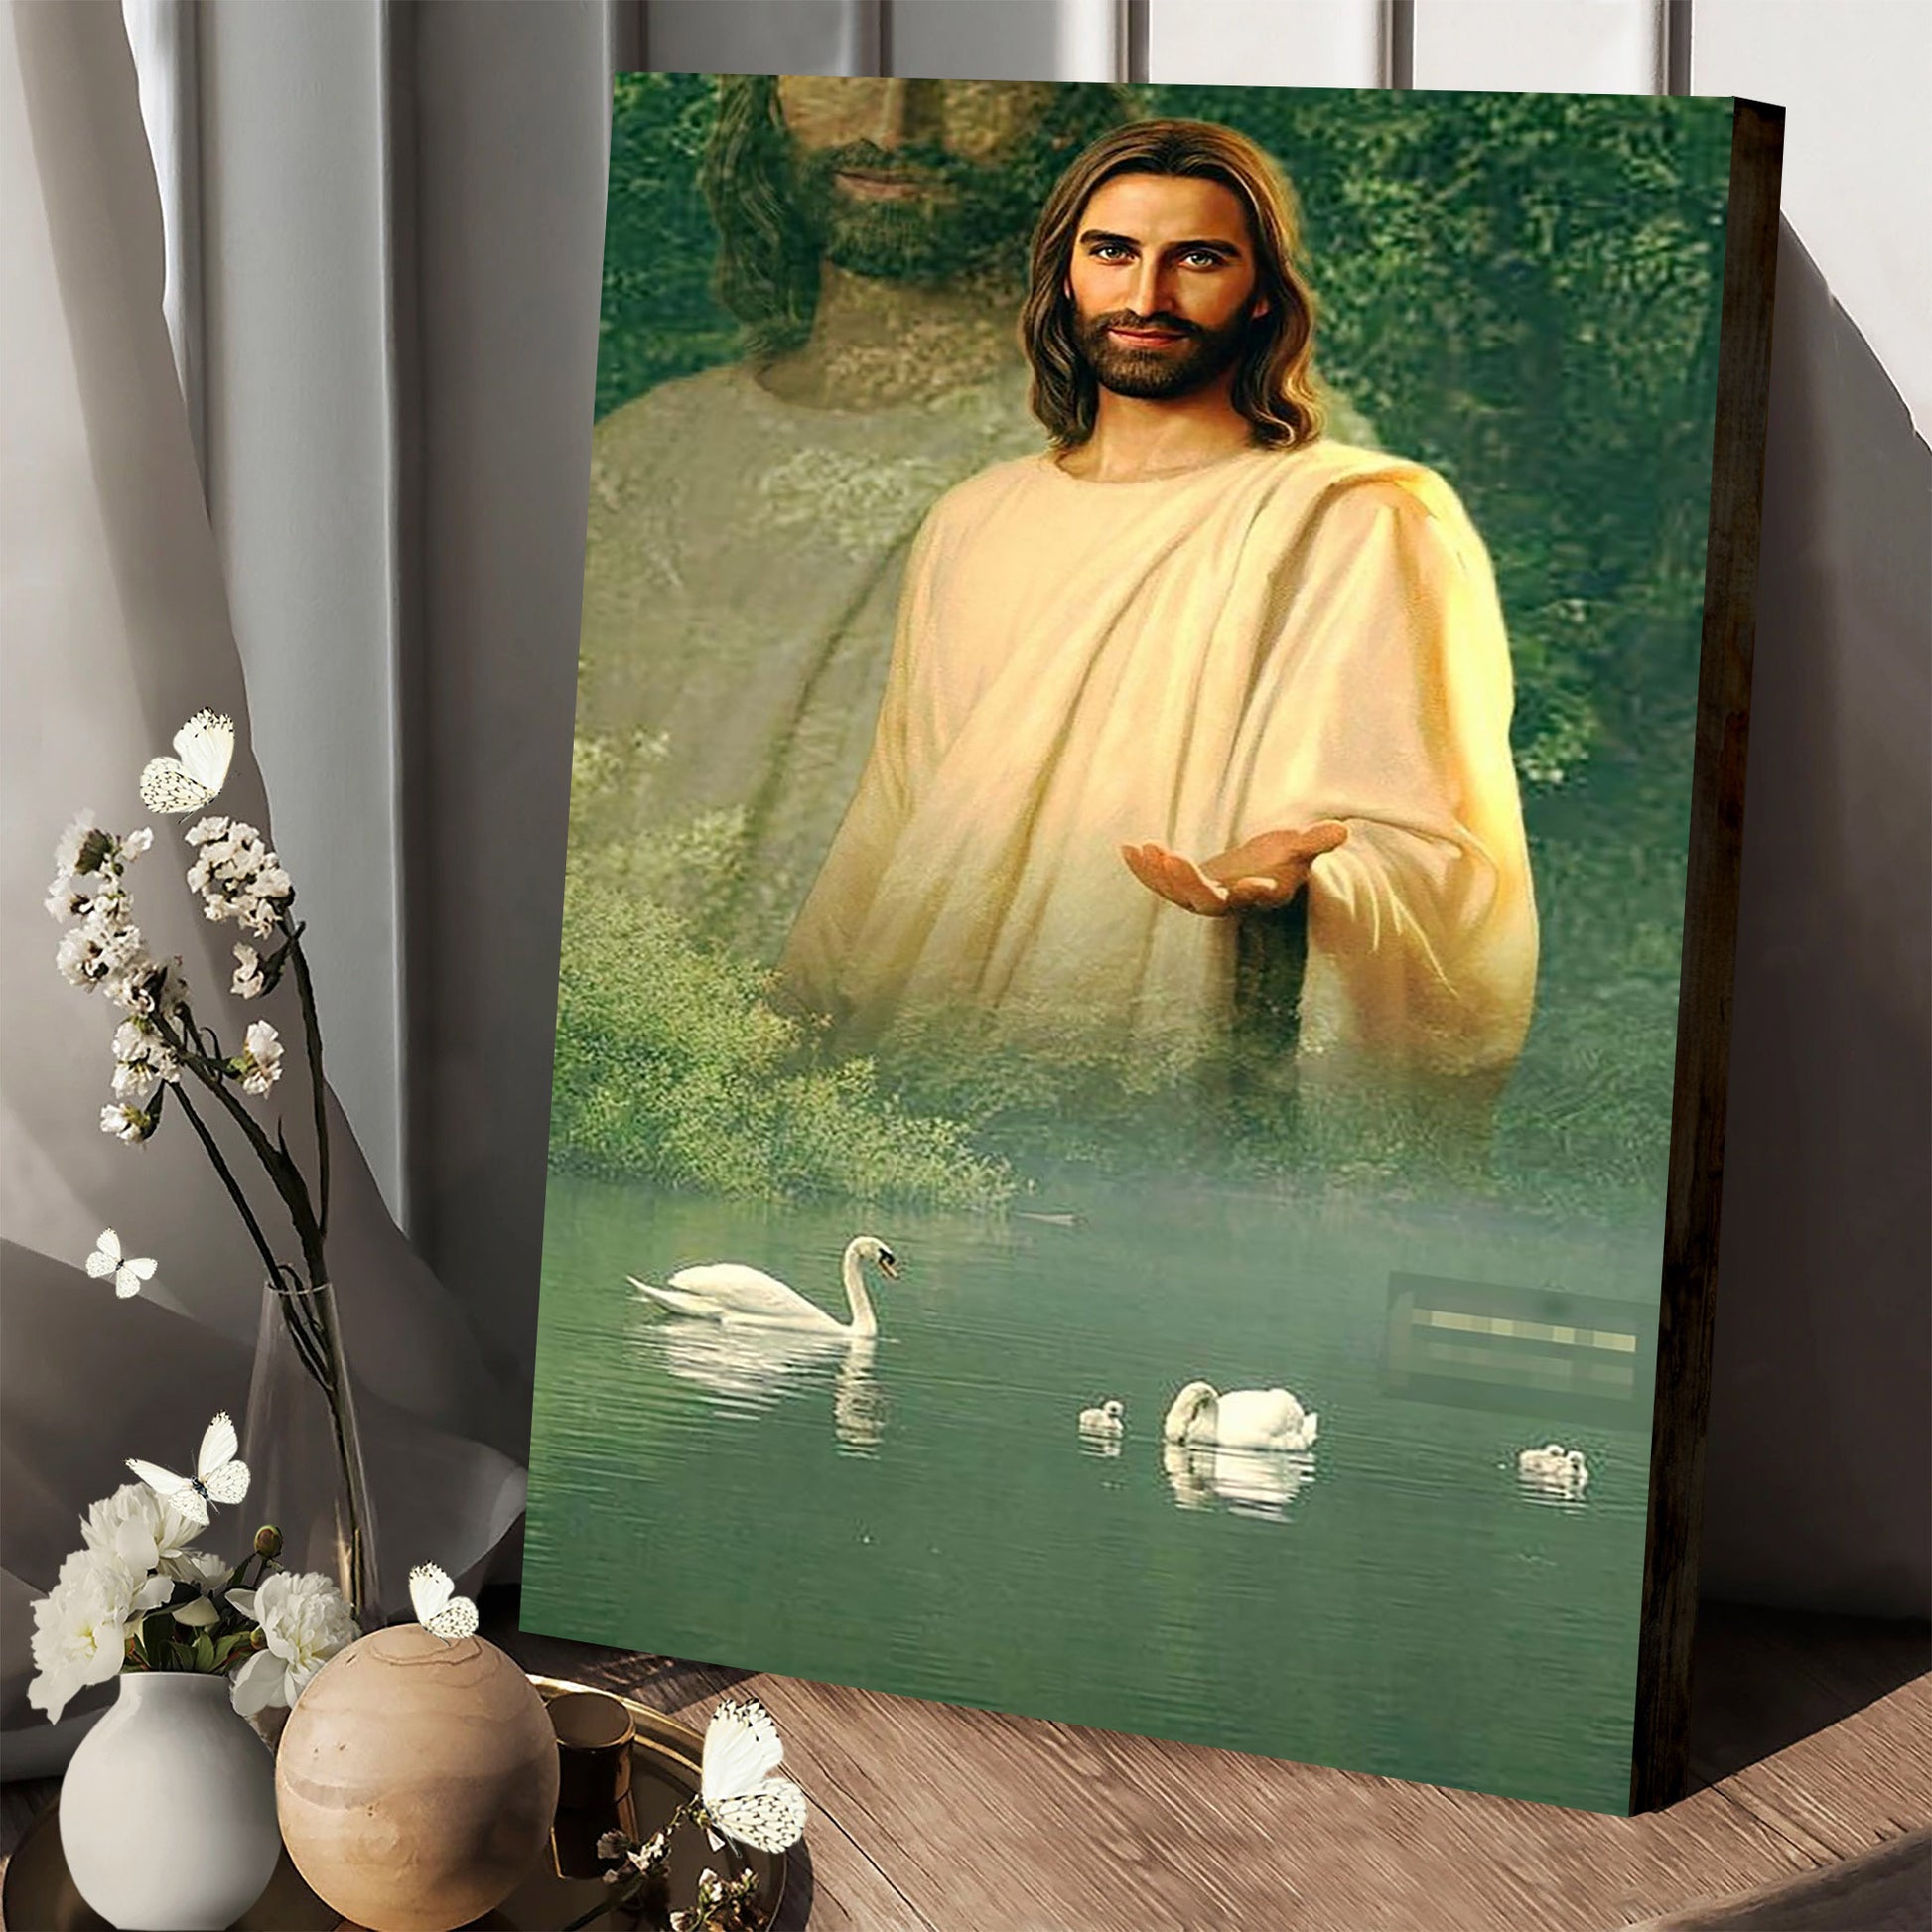 Jesus Hands Out Canvas Prints - Jesus Christ Art - Christian Canvas Wall Decor